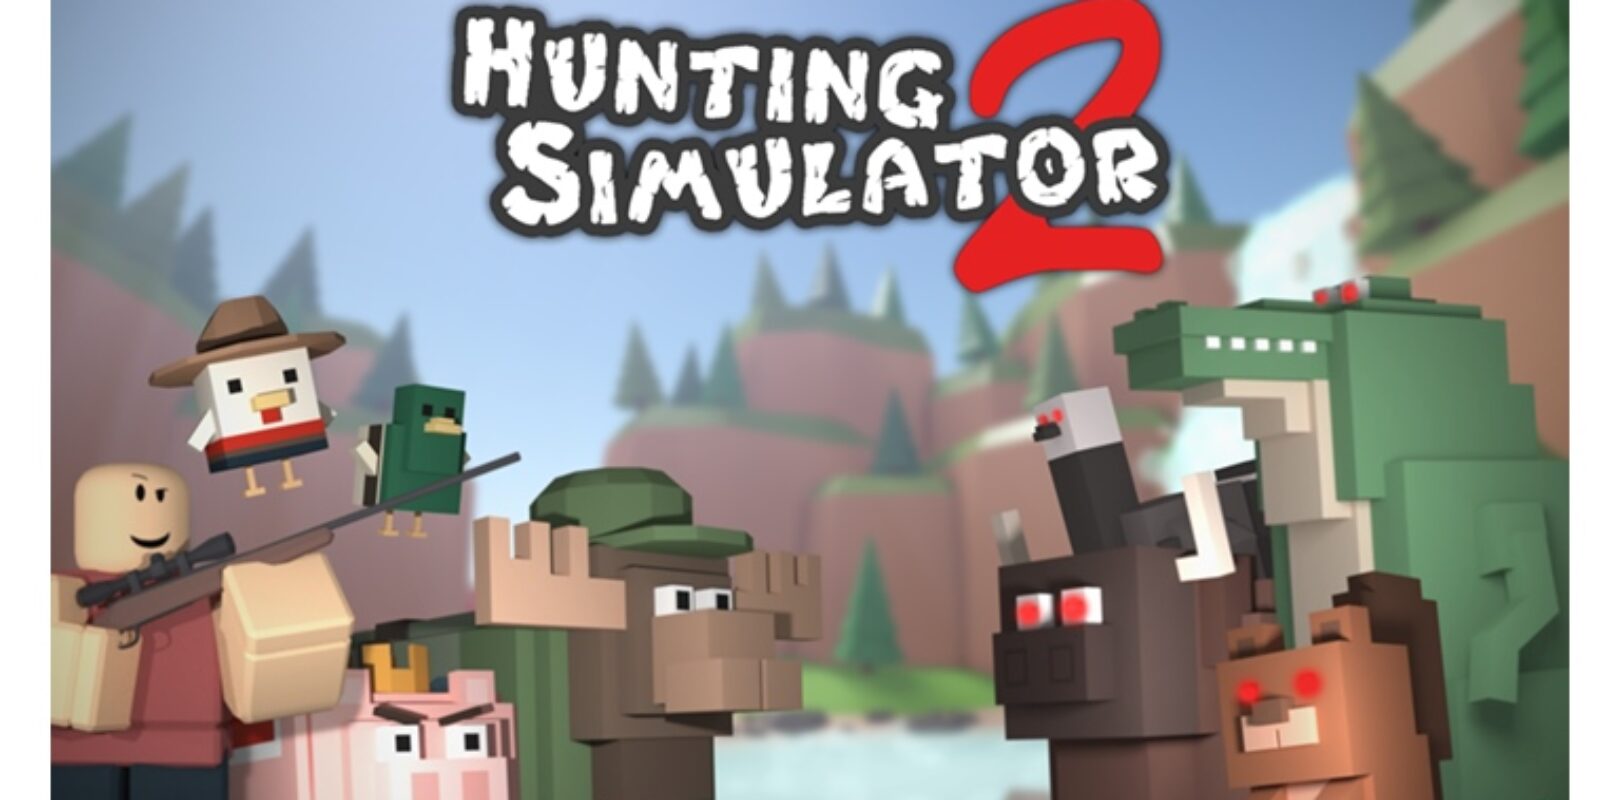 hunting simulator 2 money cheat